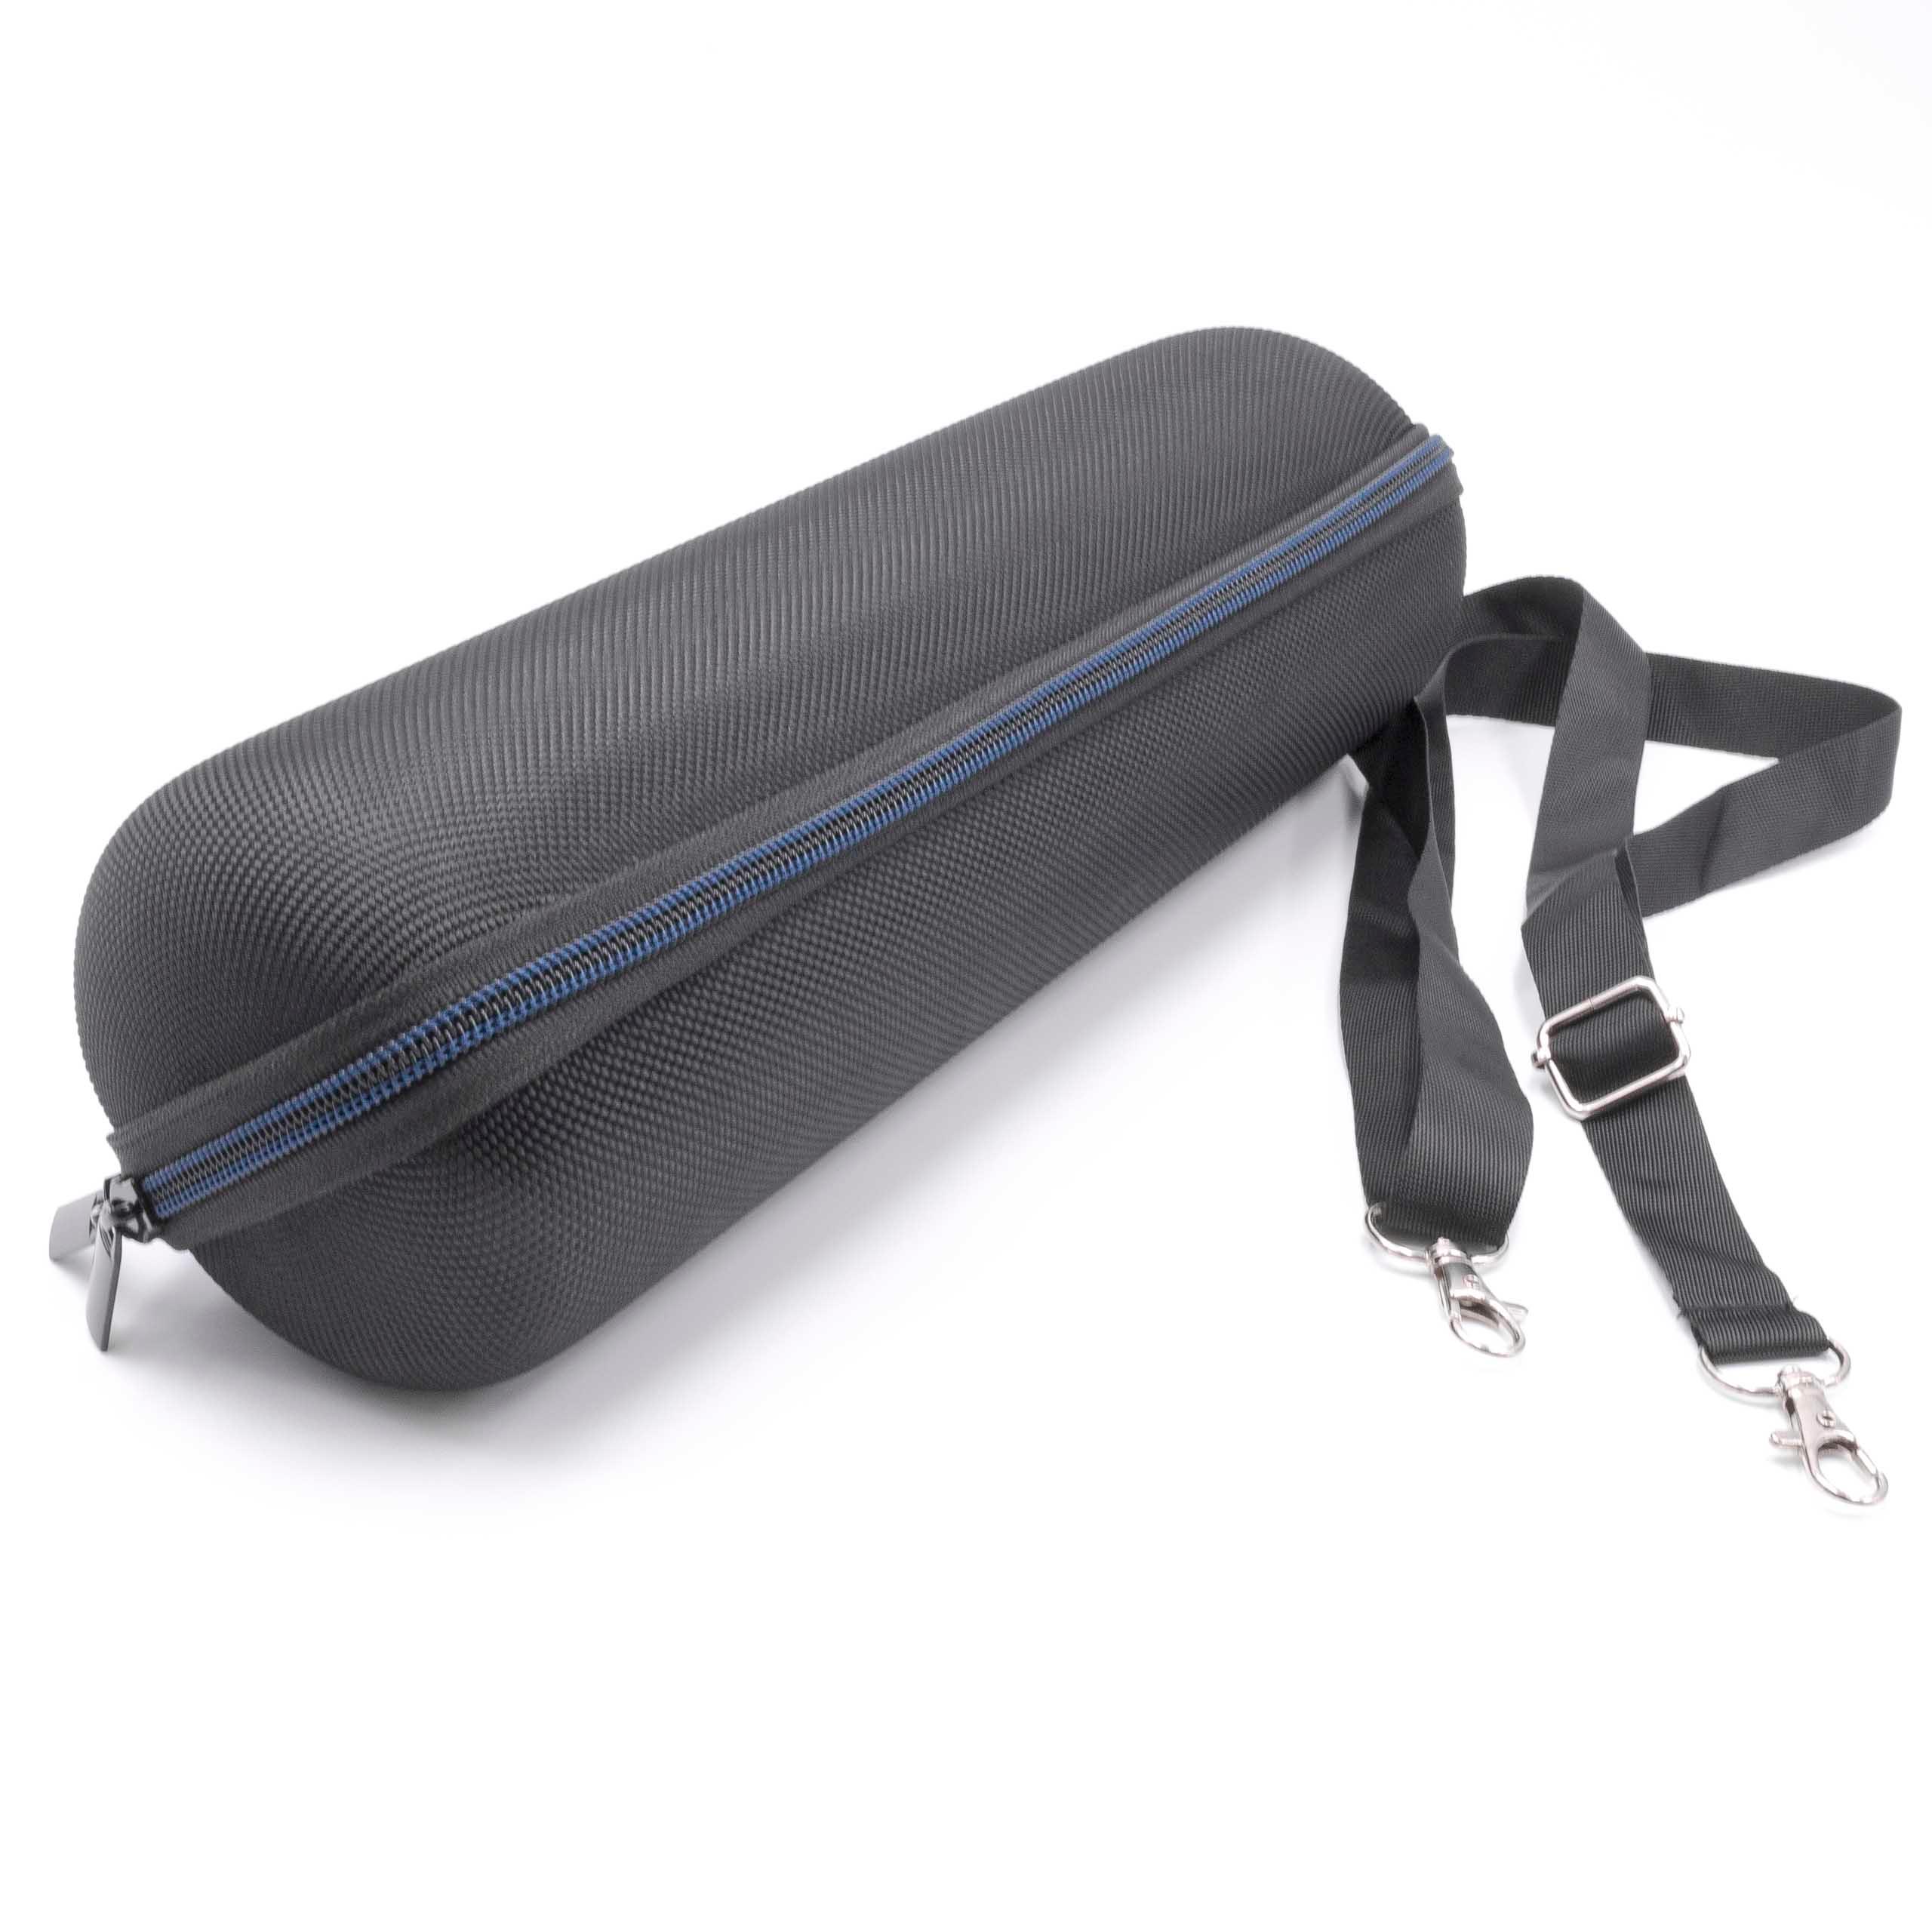 Case suitable for Logitech Ultimate Ears Megaboom Loudspeaker - nylon, velvet, Black, Blue, with Carry Strap